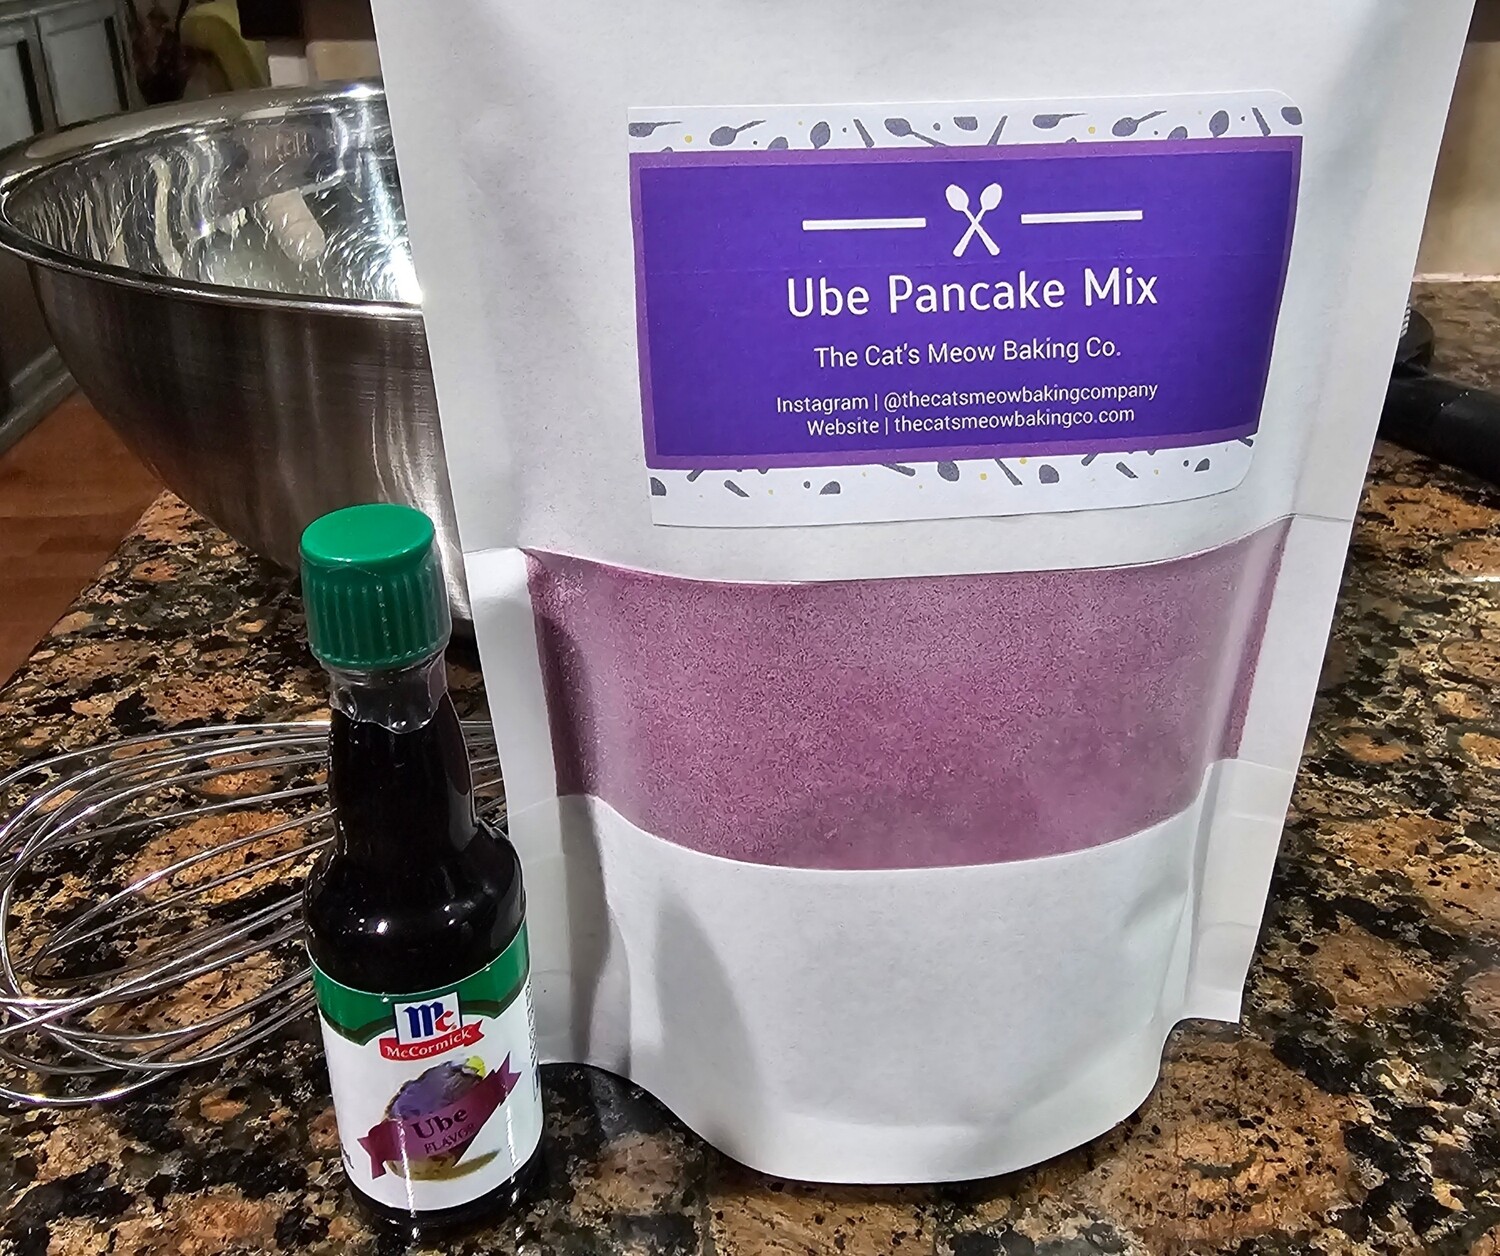 Ube Pancake Mix and McCormick Ube Extract